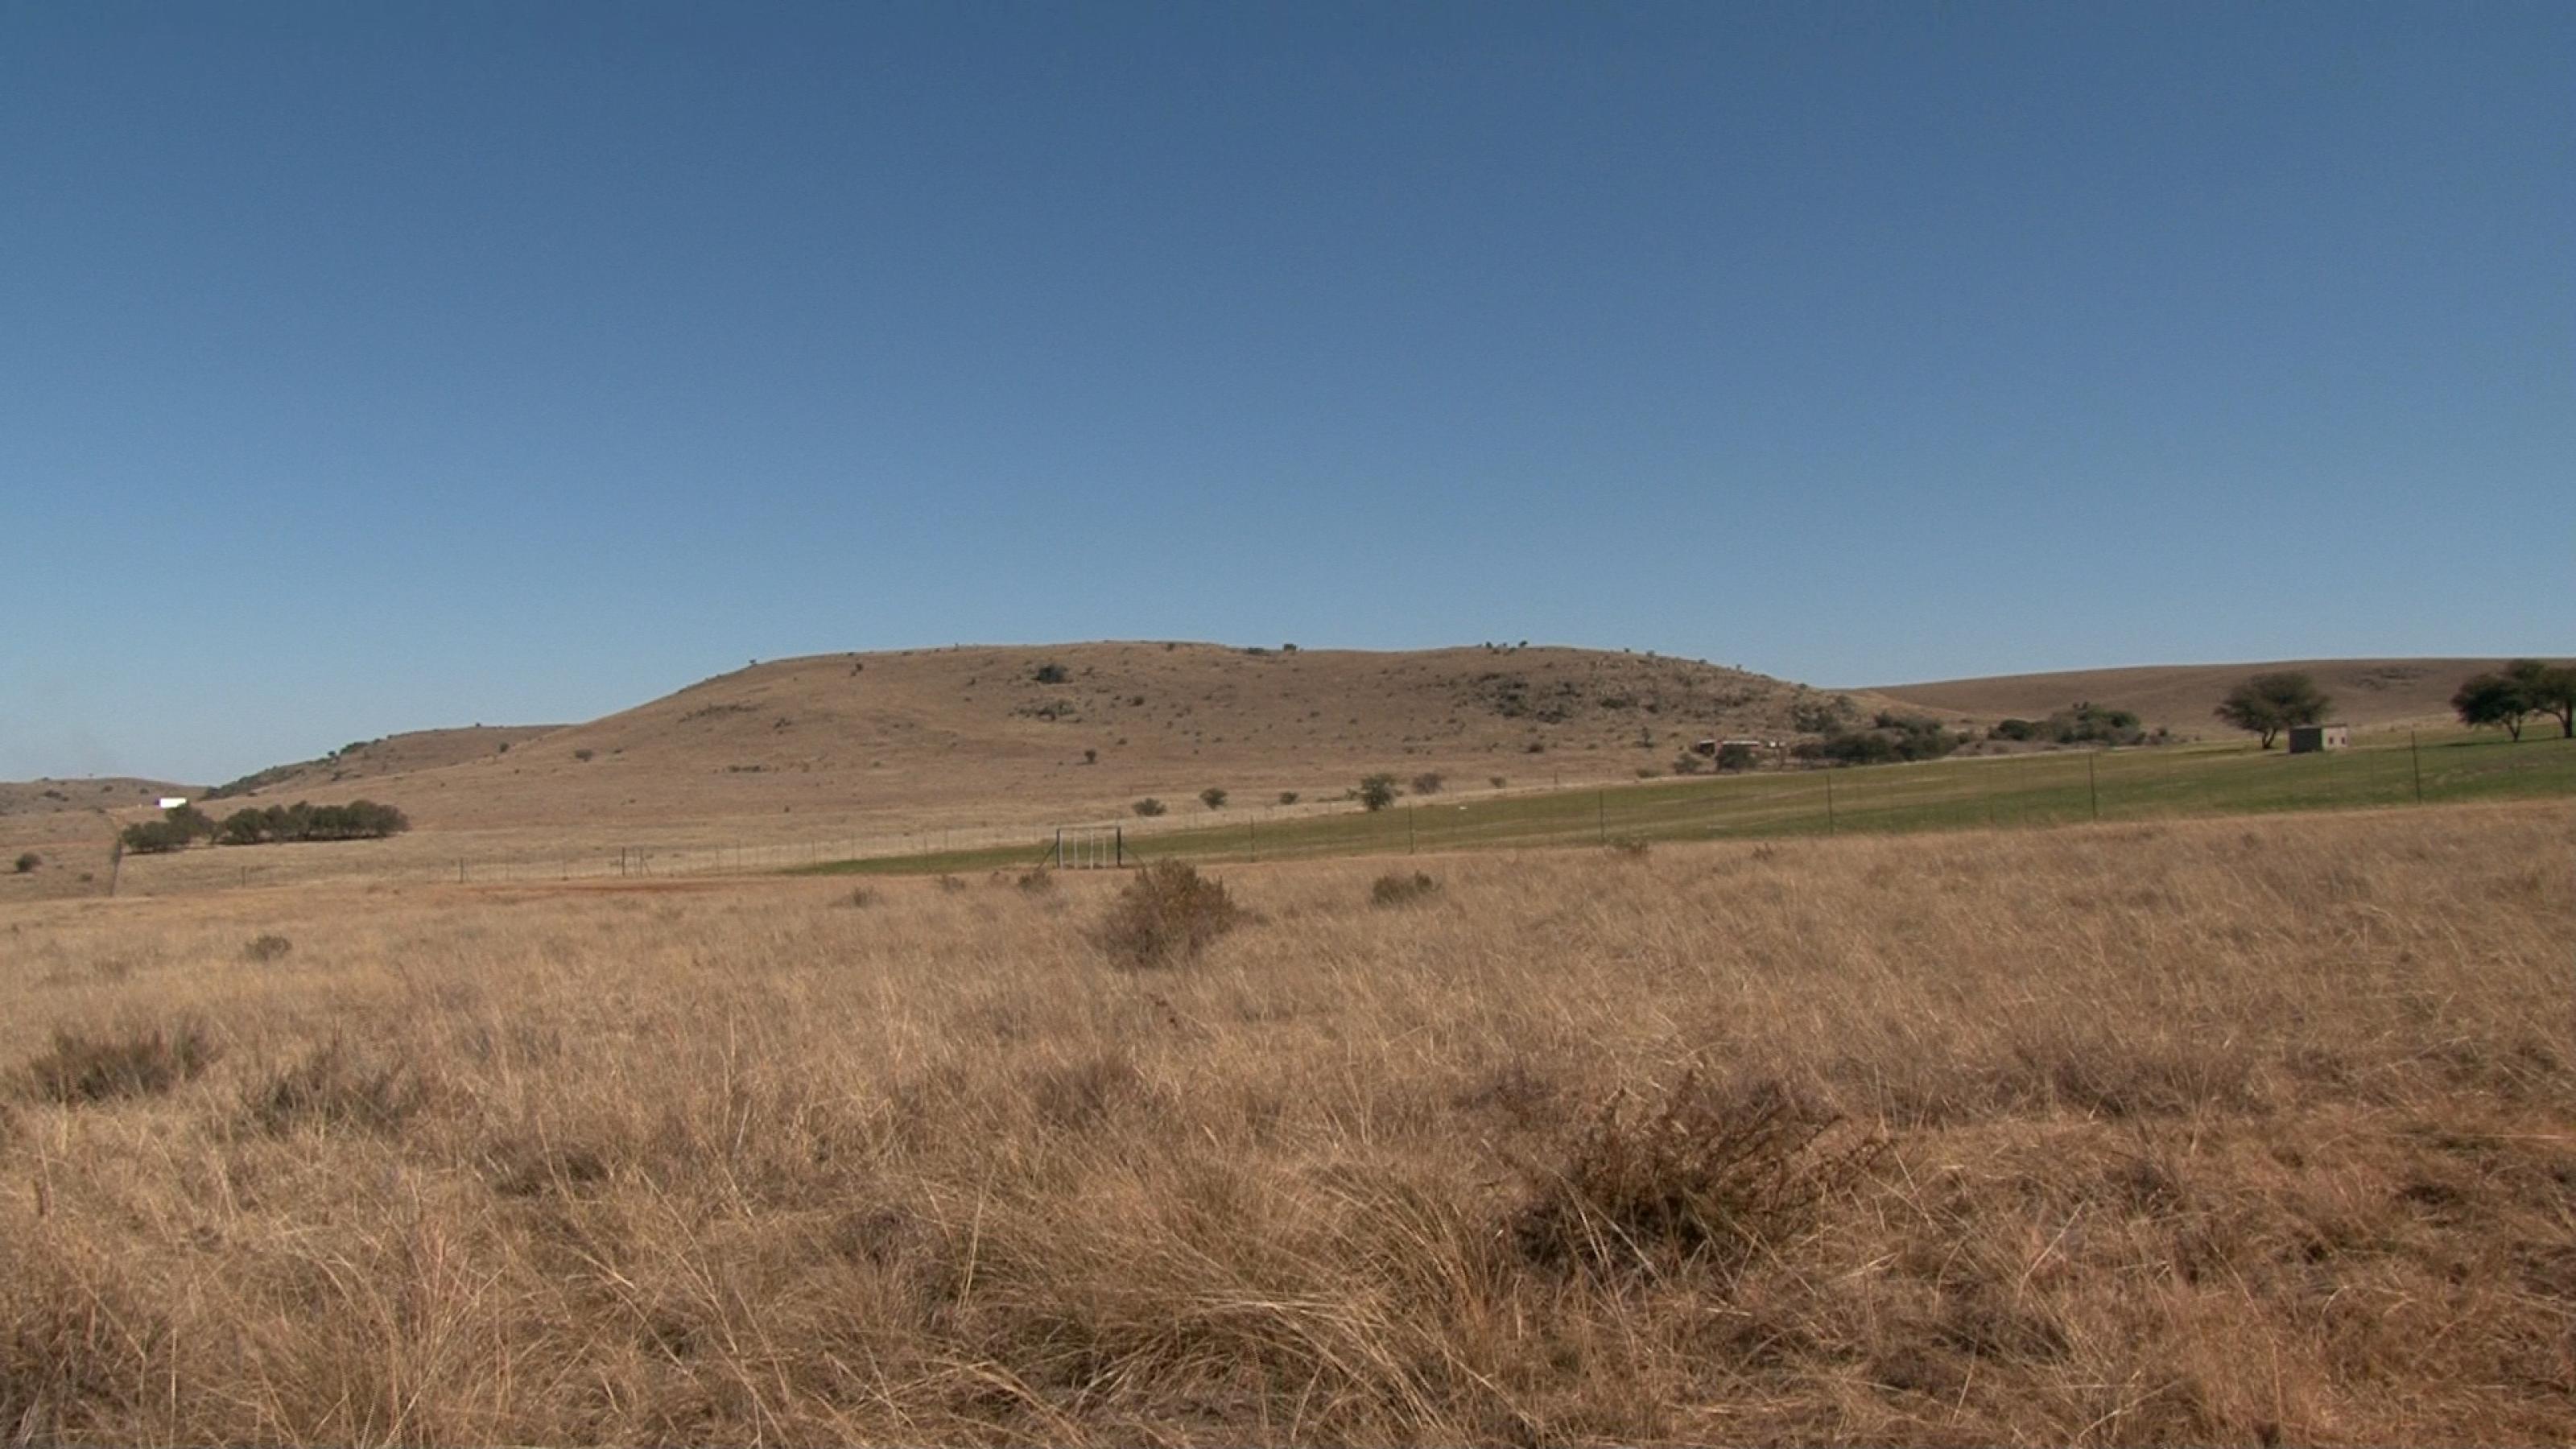 Das Foto zeigt eine trockene, braune Graslandschaft mit einzelnen Büschen und Bäumen dazwischen, im Hintergrund sanft geschwungen Hügel. Hier entdeckten Forschende in Karsthöhlen zahlreiche Relikte aus der menschlichen Verwandtschaft. Die Drimolen-Fossilienfundstätte liegt in der Nähe von Kromdraai in Südafrika.